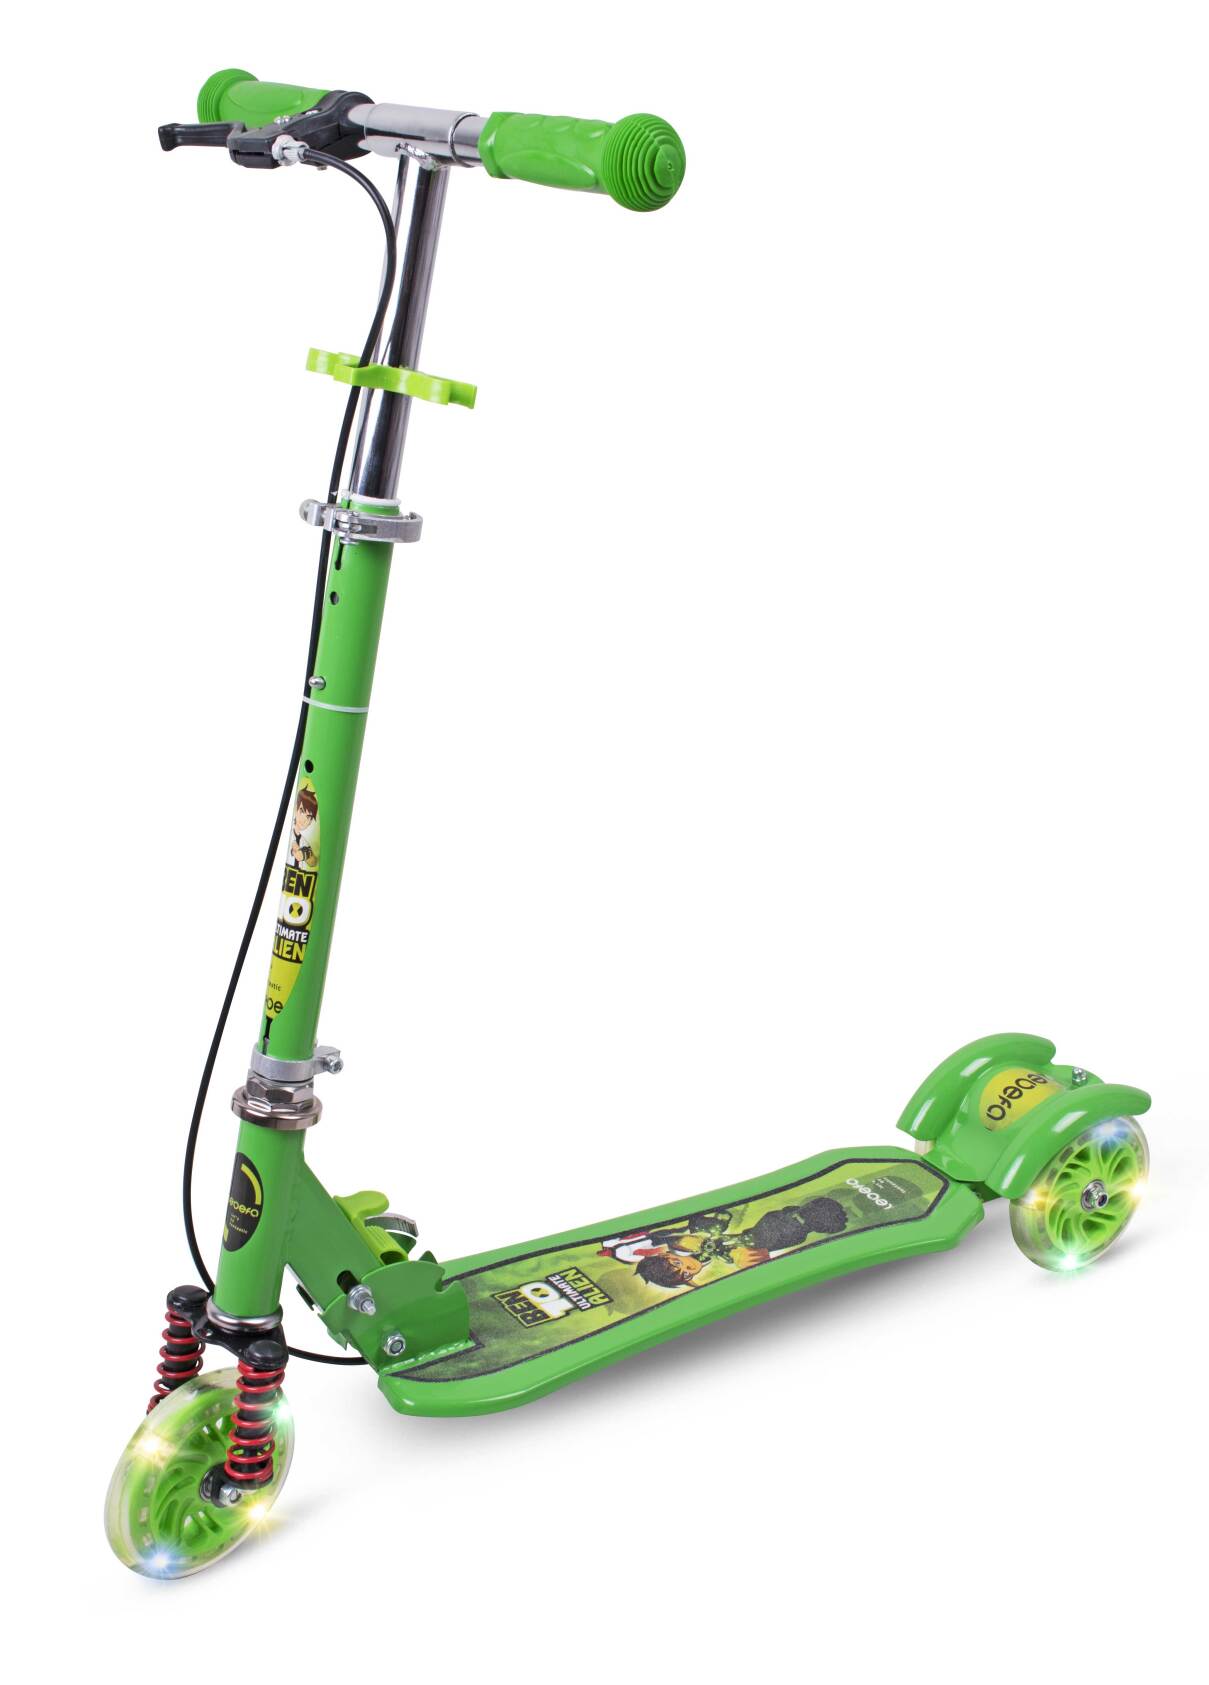  اسکوتر مکانیکی کودکان با طراحی بدنه‌ی کارتونی سبز بن تن، با دو چرخ عقبی و دسته‌ با ارتفاع قابل تنظیم 